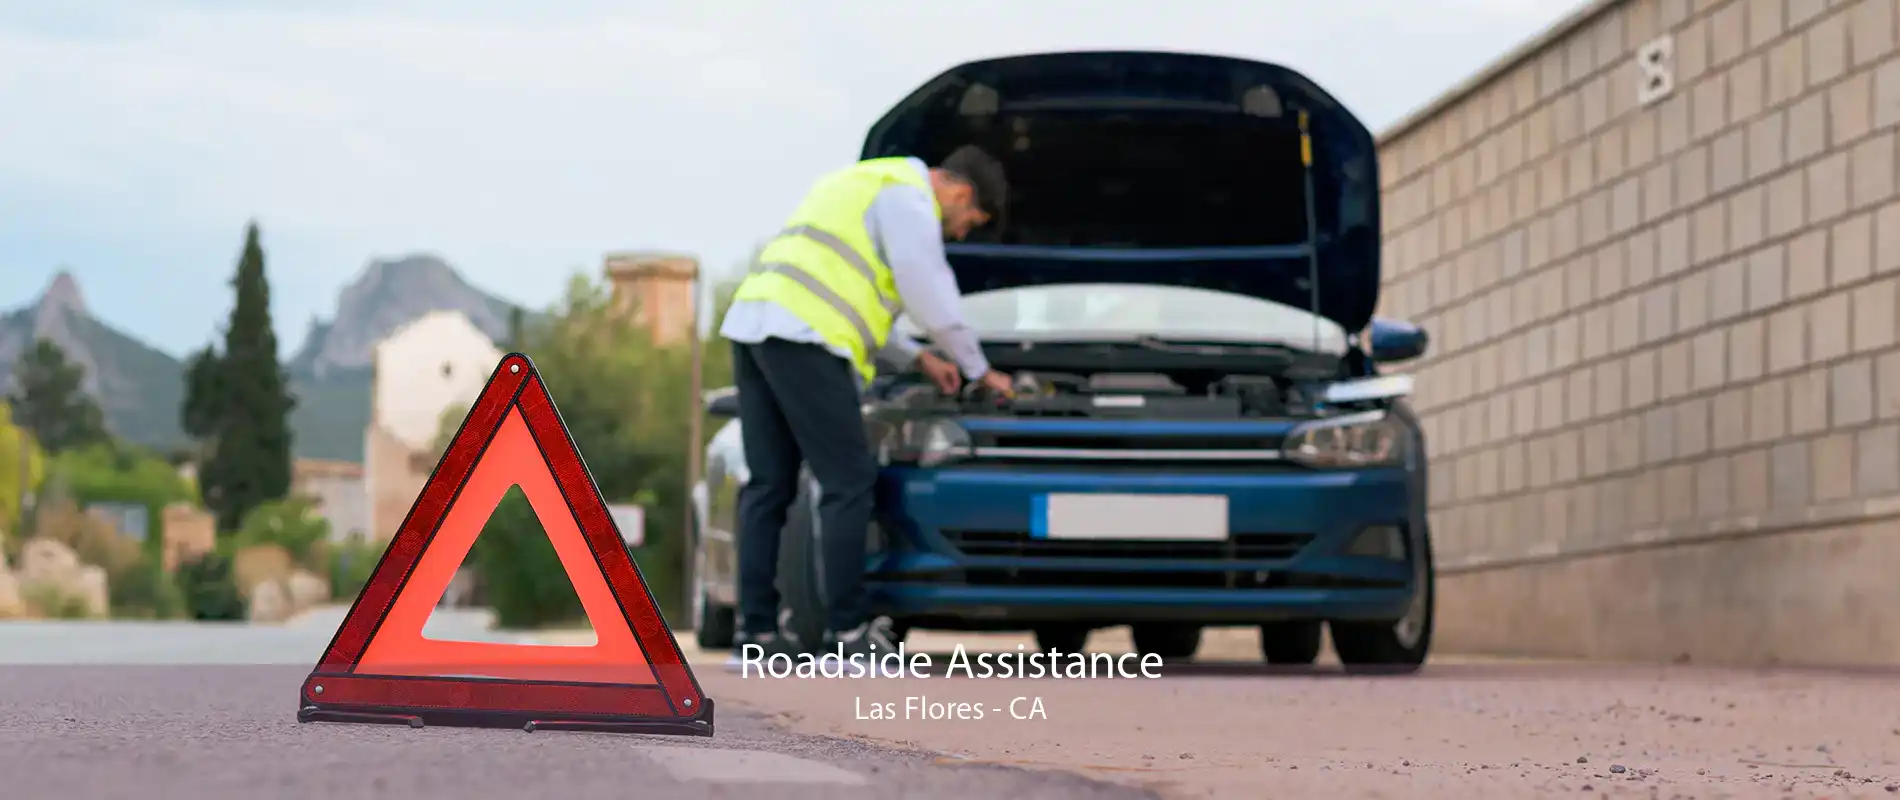 Roadside Assistance Las Flores - CA